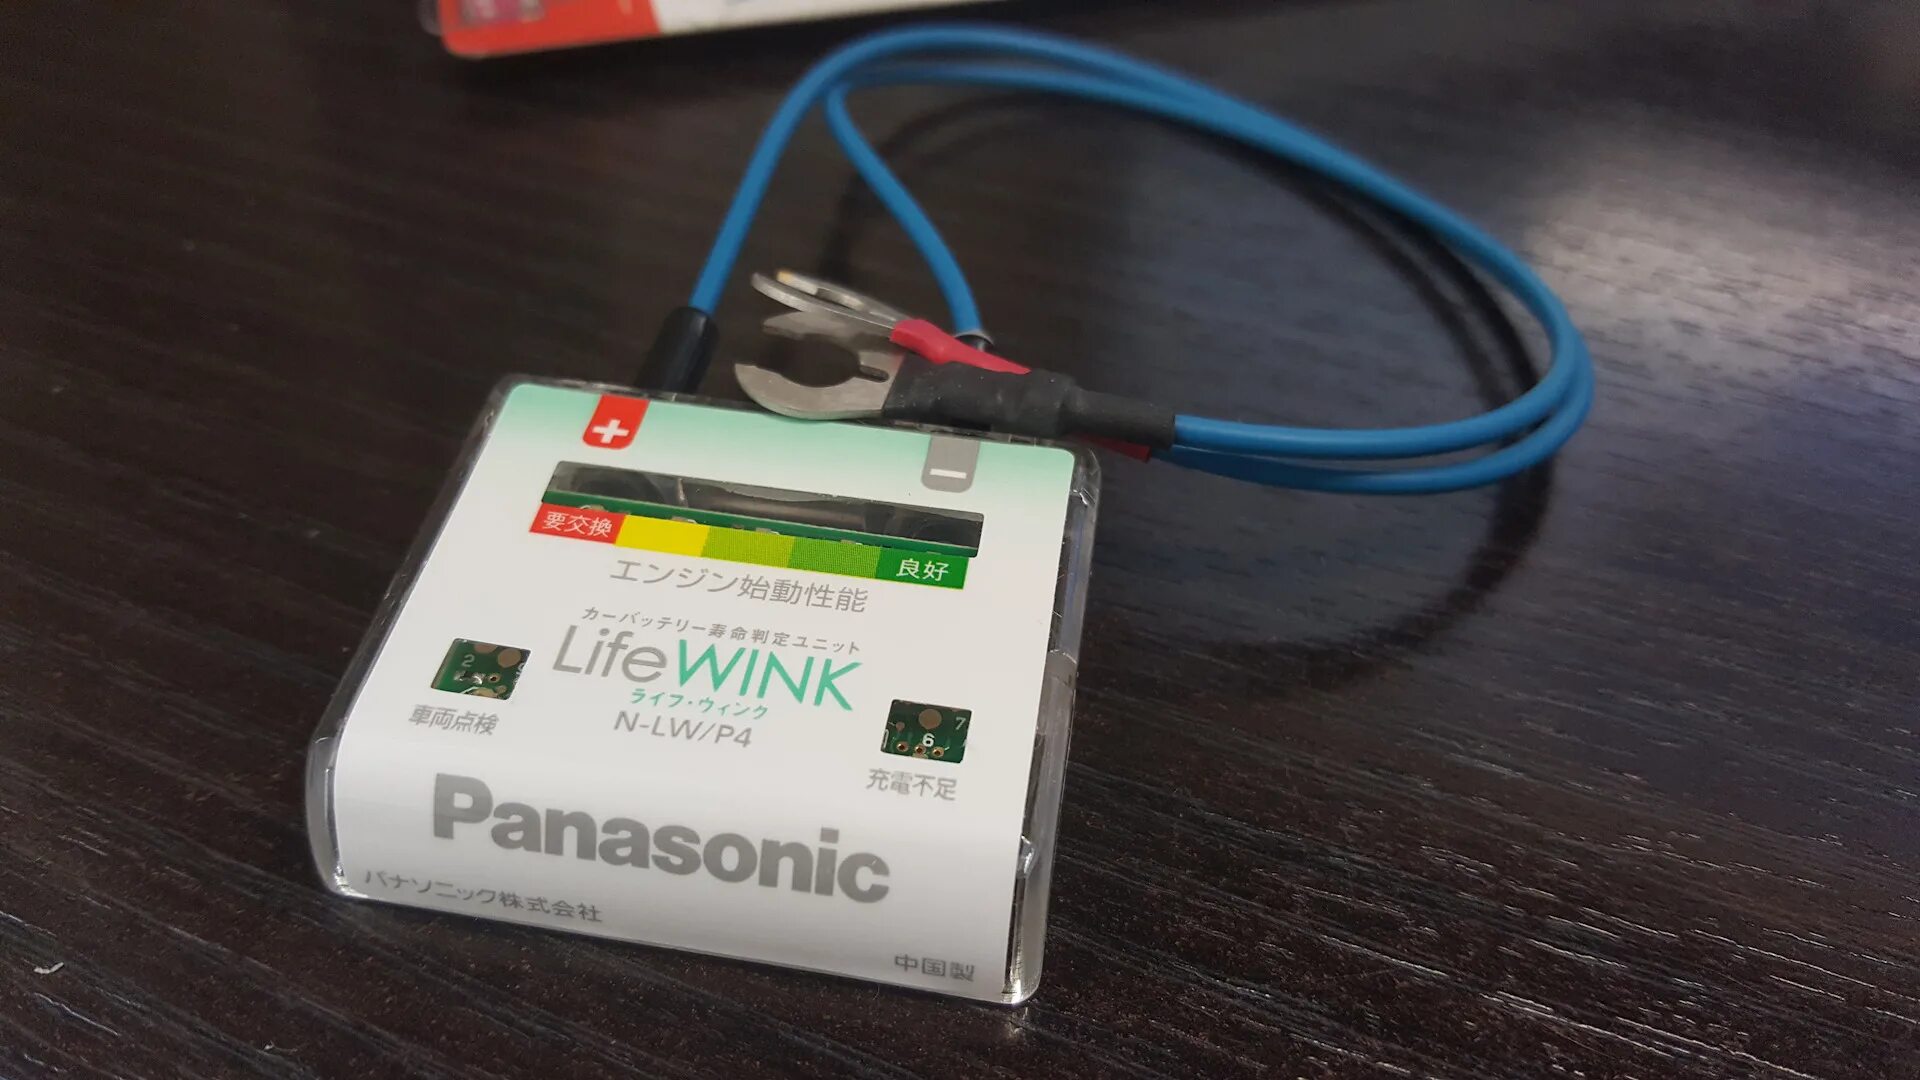 Life wink Panasonic. Датчик LIFEWINK. Panasonic Life телефон.